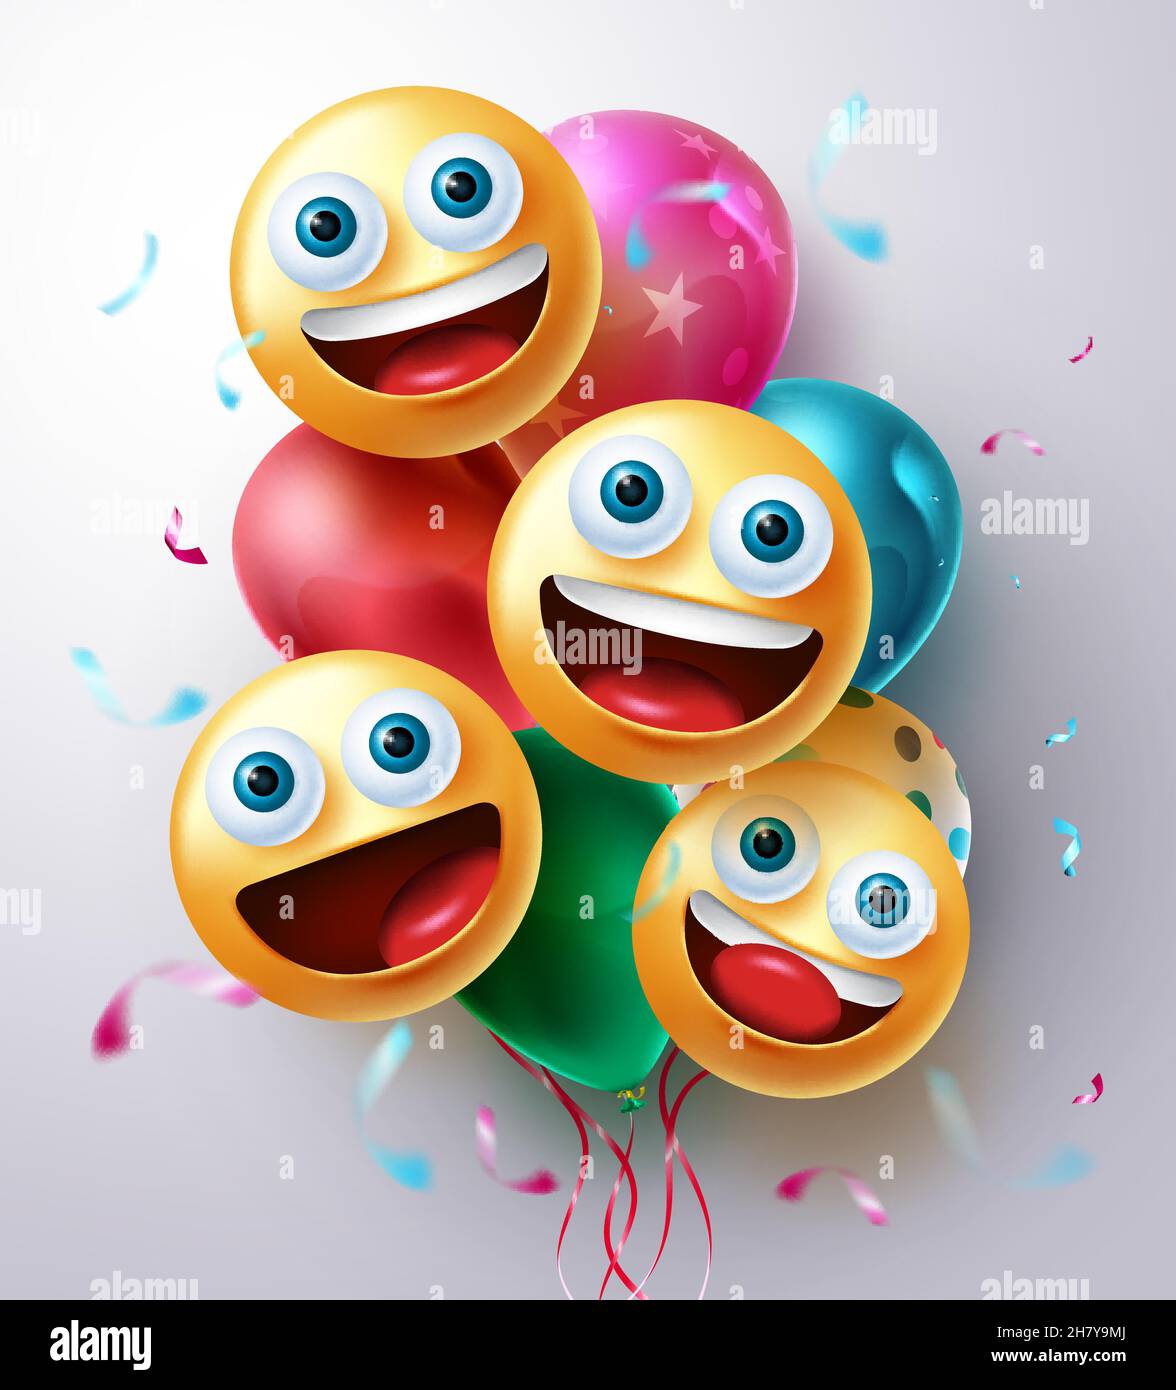 Design vettoriale dei personaggi di compleanno Smileys. I volti sorridenti di emojis e il mazzo di palloncini galleggiano con elementi di confetti da festa per la celebrazione del giorno della nascita. Illustrazione Vettoriale